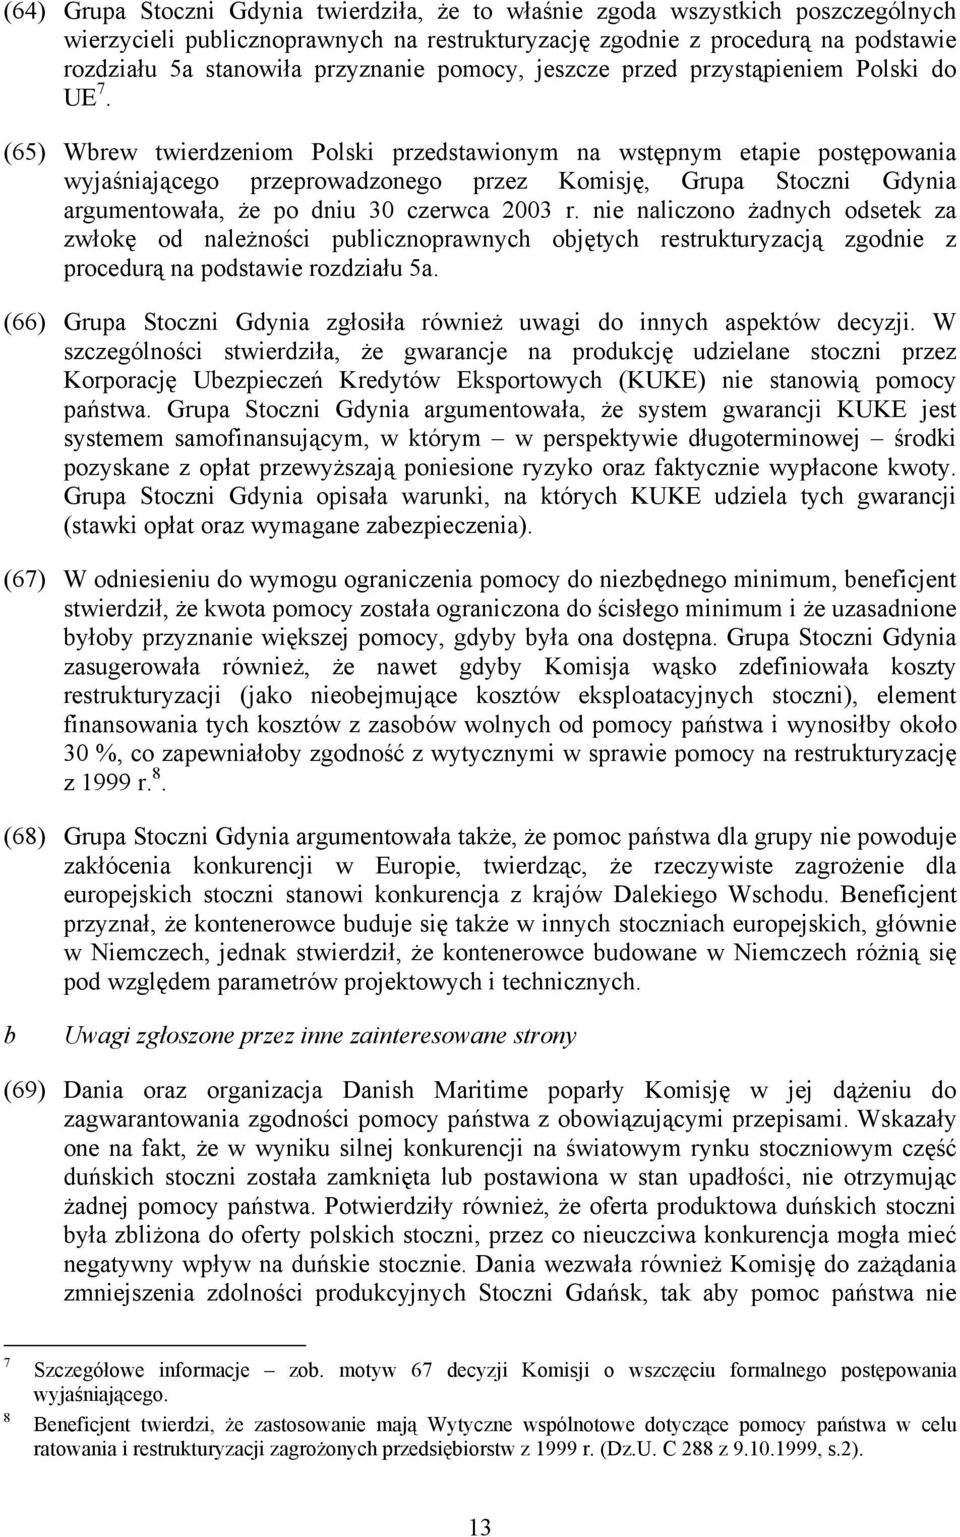 (65) Wbrew twierdzeniom Polski przedstawionym na wstępnym etapie postępowania wyjaśniającego przeprowadzonego przez Komisję, Grupa Stoczni Gdynia argumentowała, że po dniu 30 czerwca 2003 r.